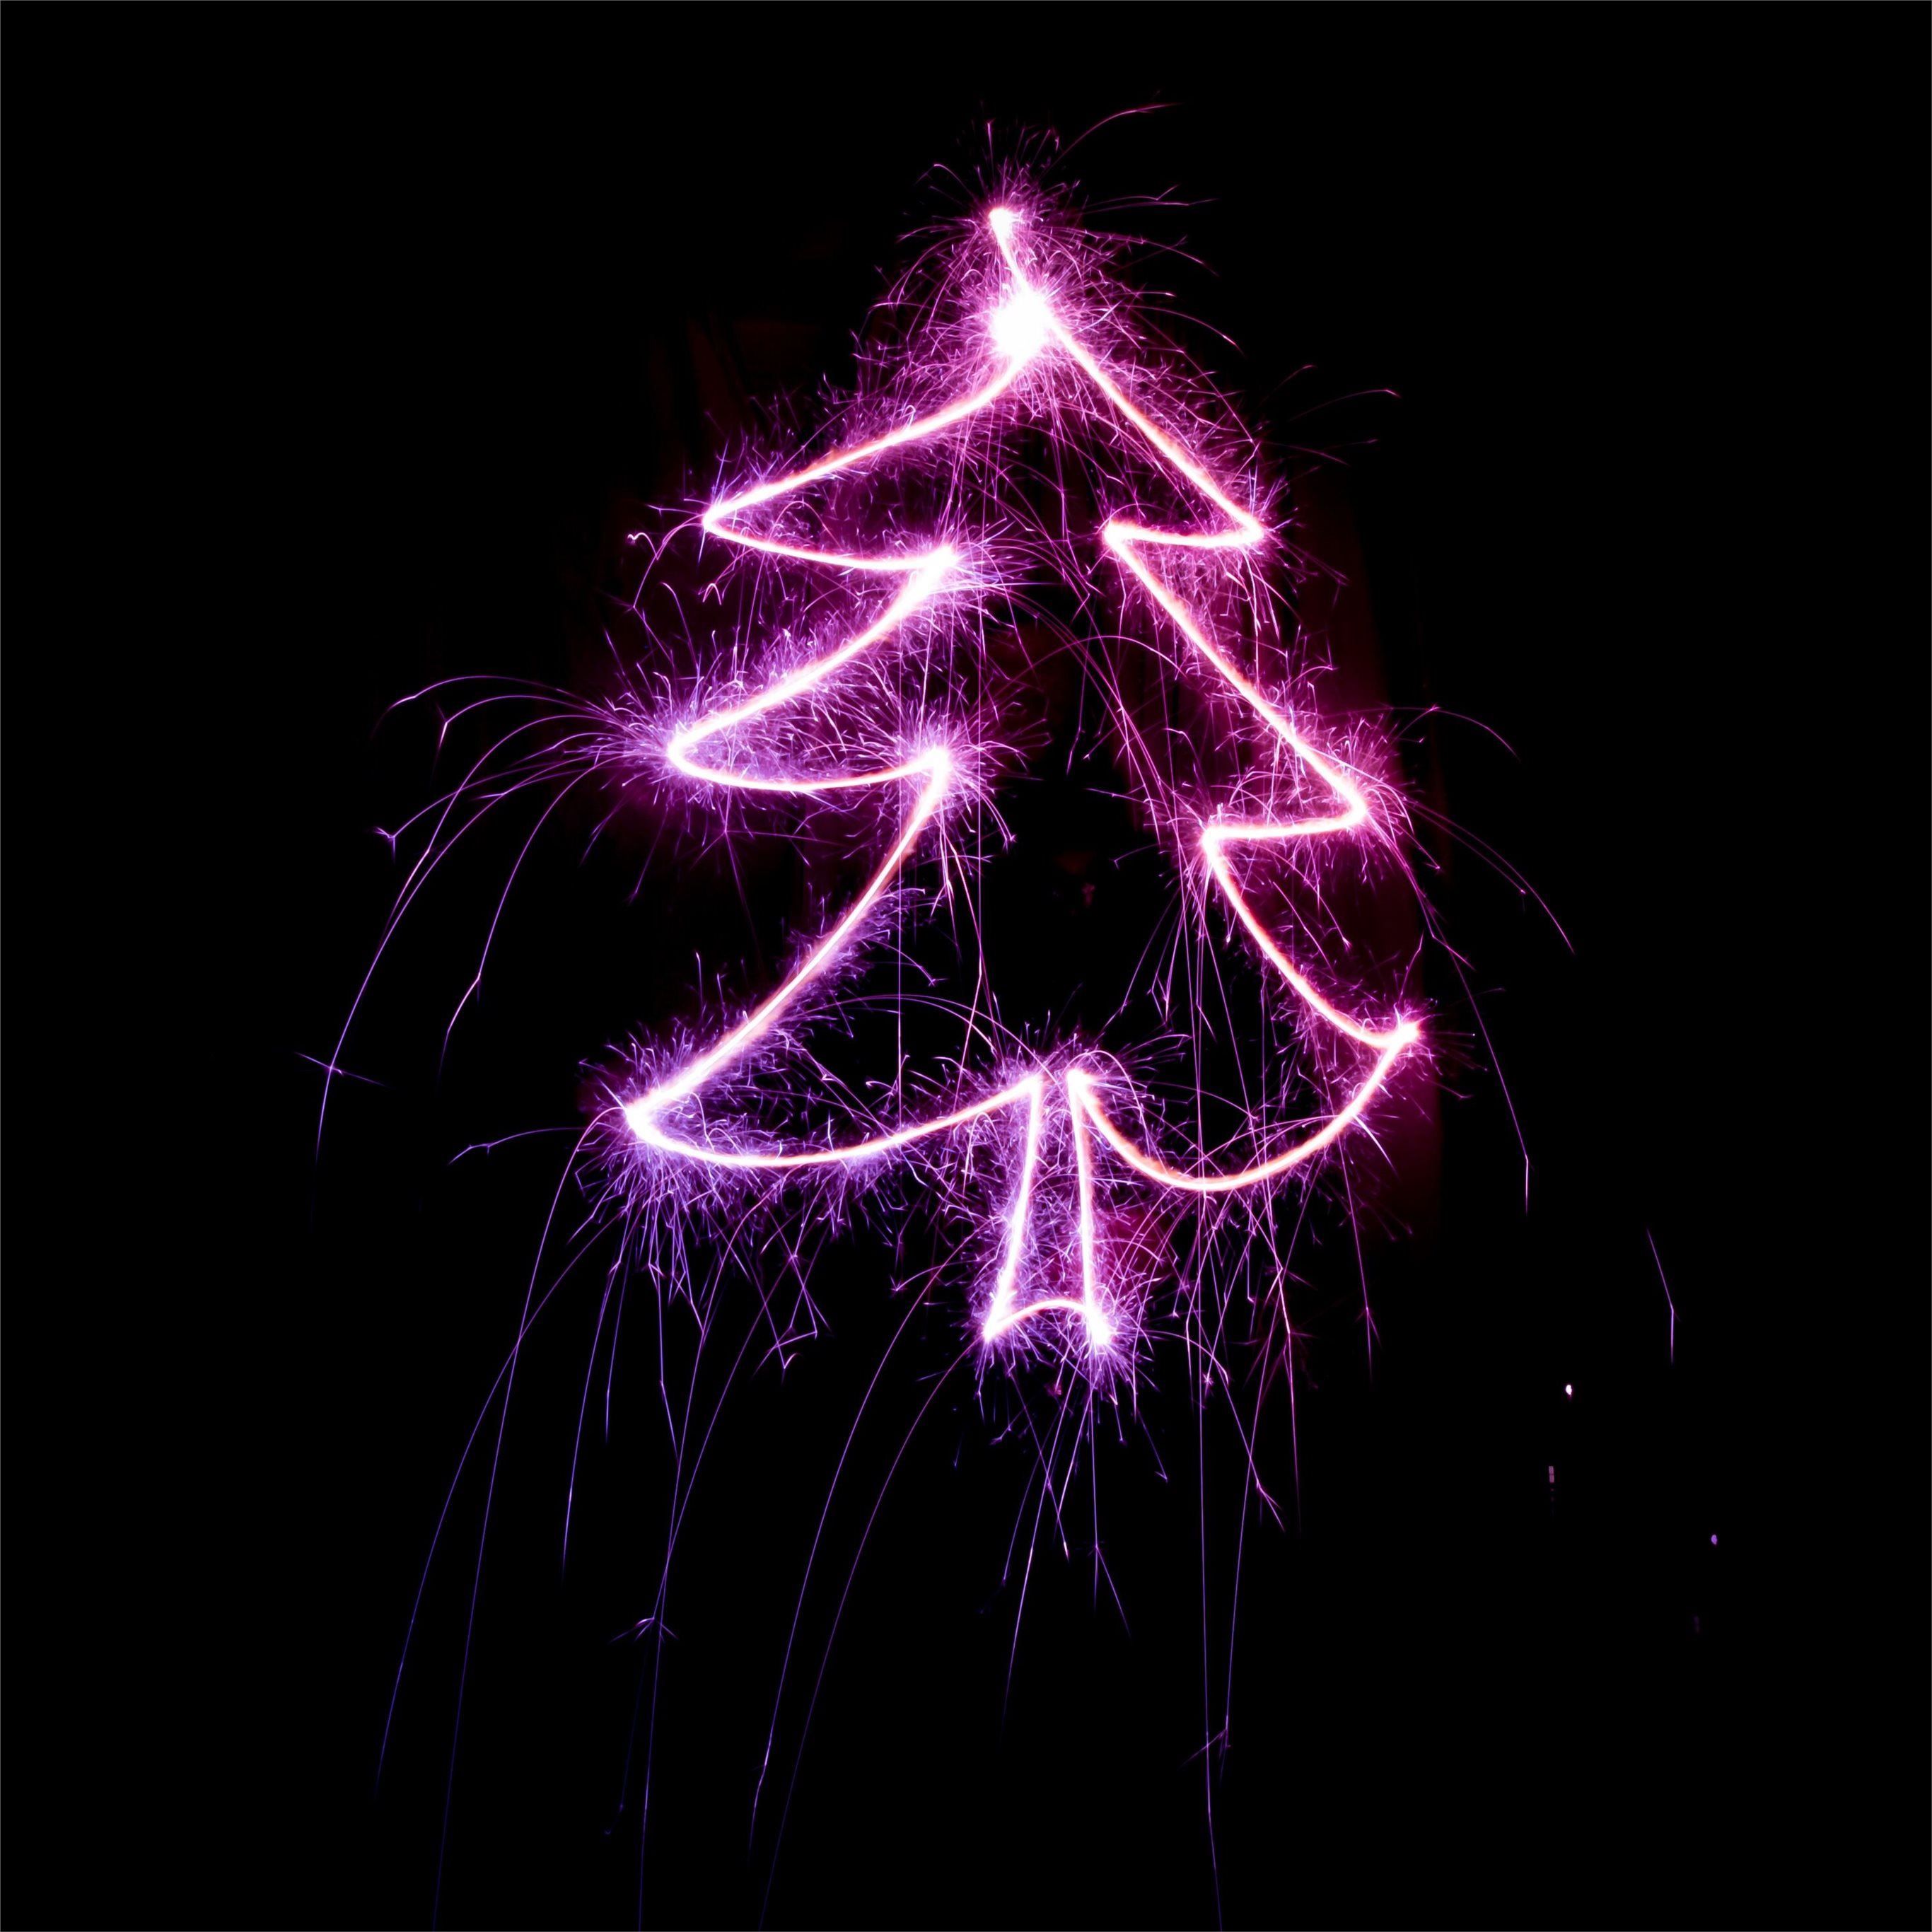 A purple christmas tree made of sparklers - Christmas, Christmas lights